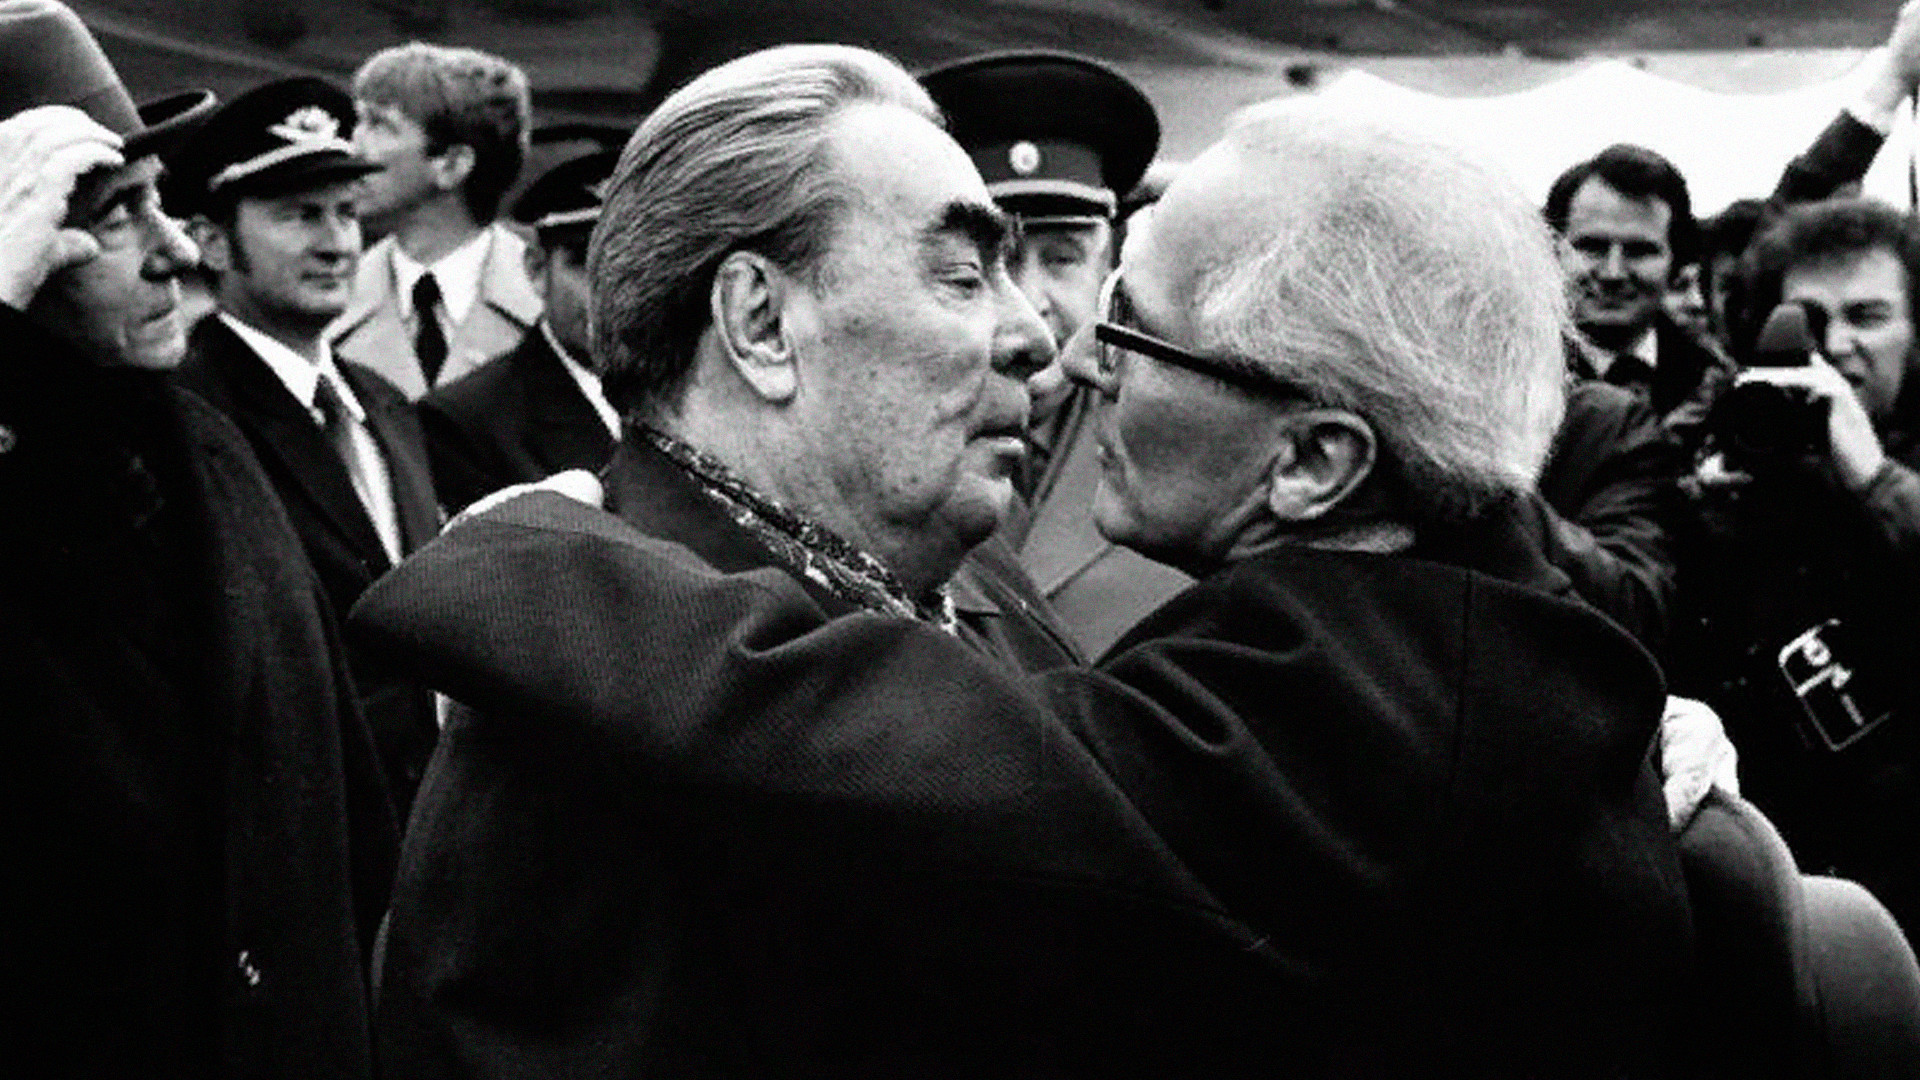 Reunión de Leonid Brézhnev con el líder de Alemania Oriental, Erich Honecker. Otra famosa foto de ellos besándose fue posteriormente consagrada como pieza de arte en el Muro de Berlín.